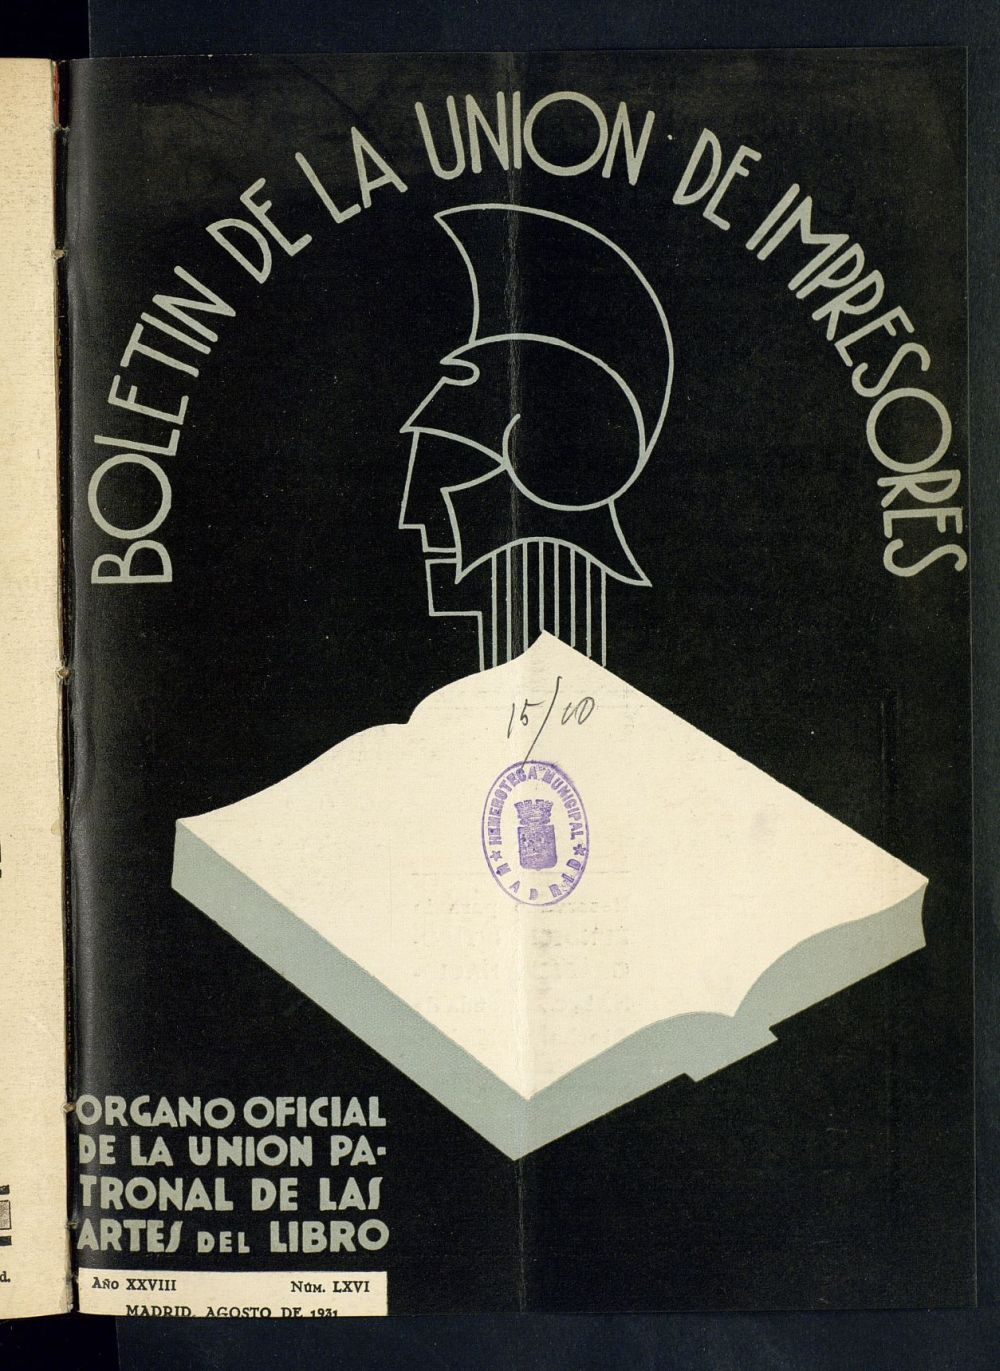 Boletn de la unin de impresores : rgano de la unin patronal de las artes del libro de agosto de 1931